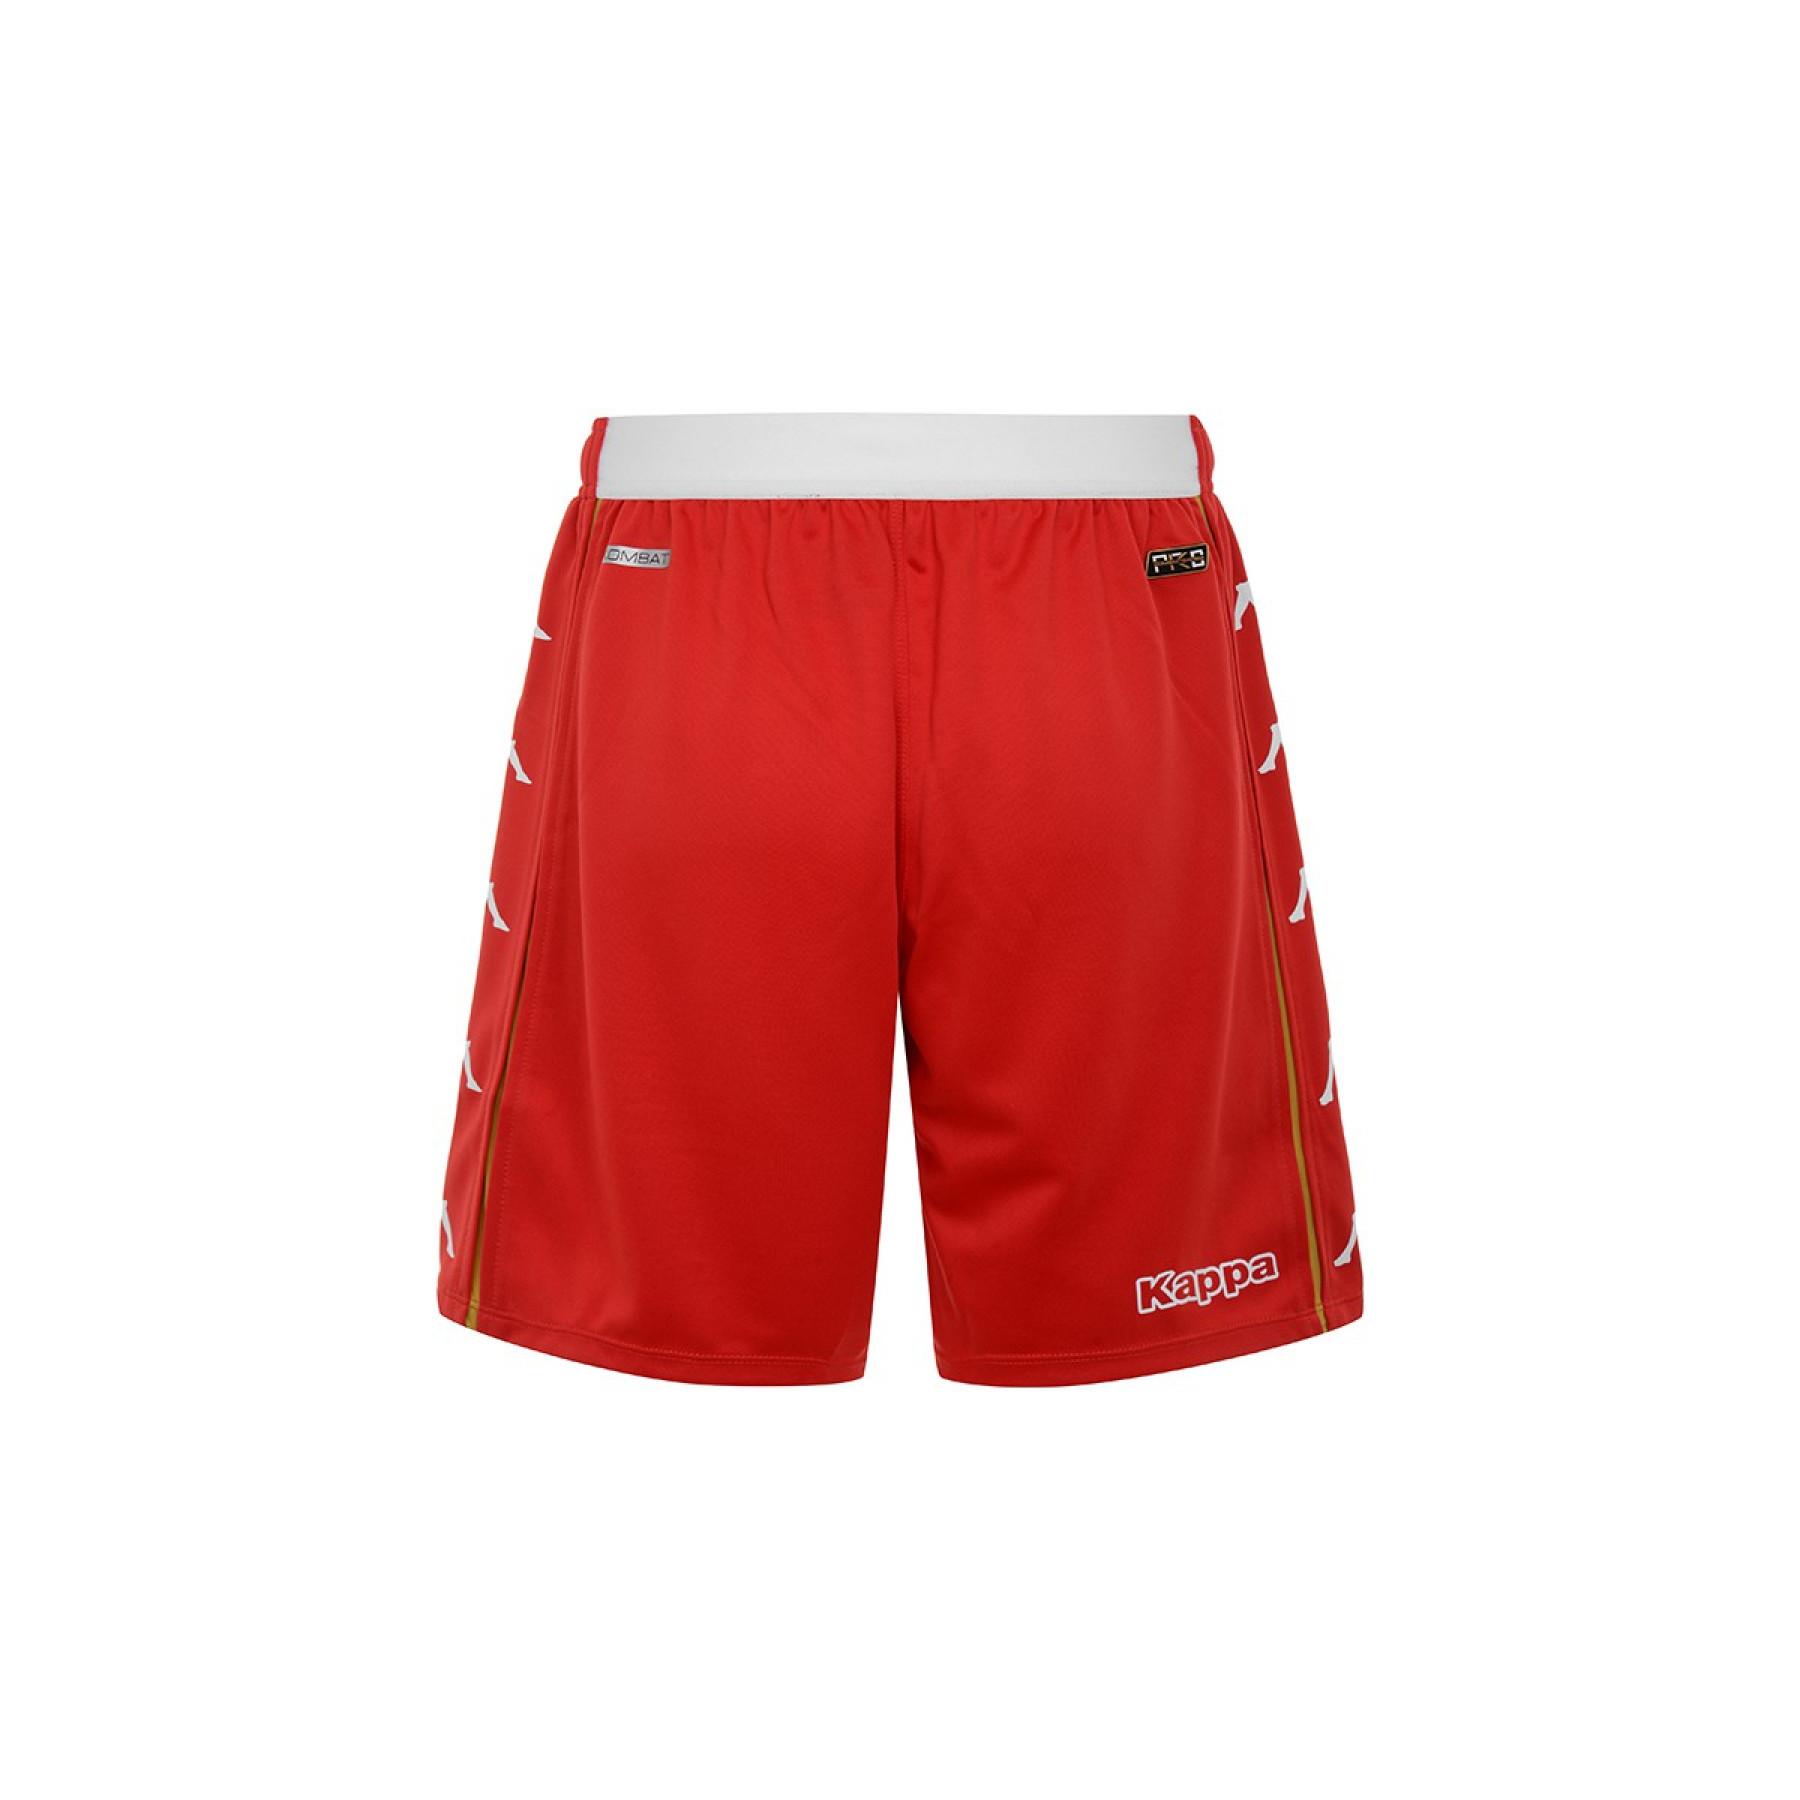 Outdoor shorts AS Monaco 2020/21